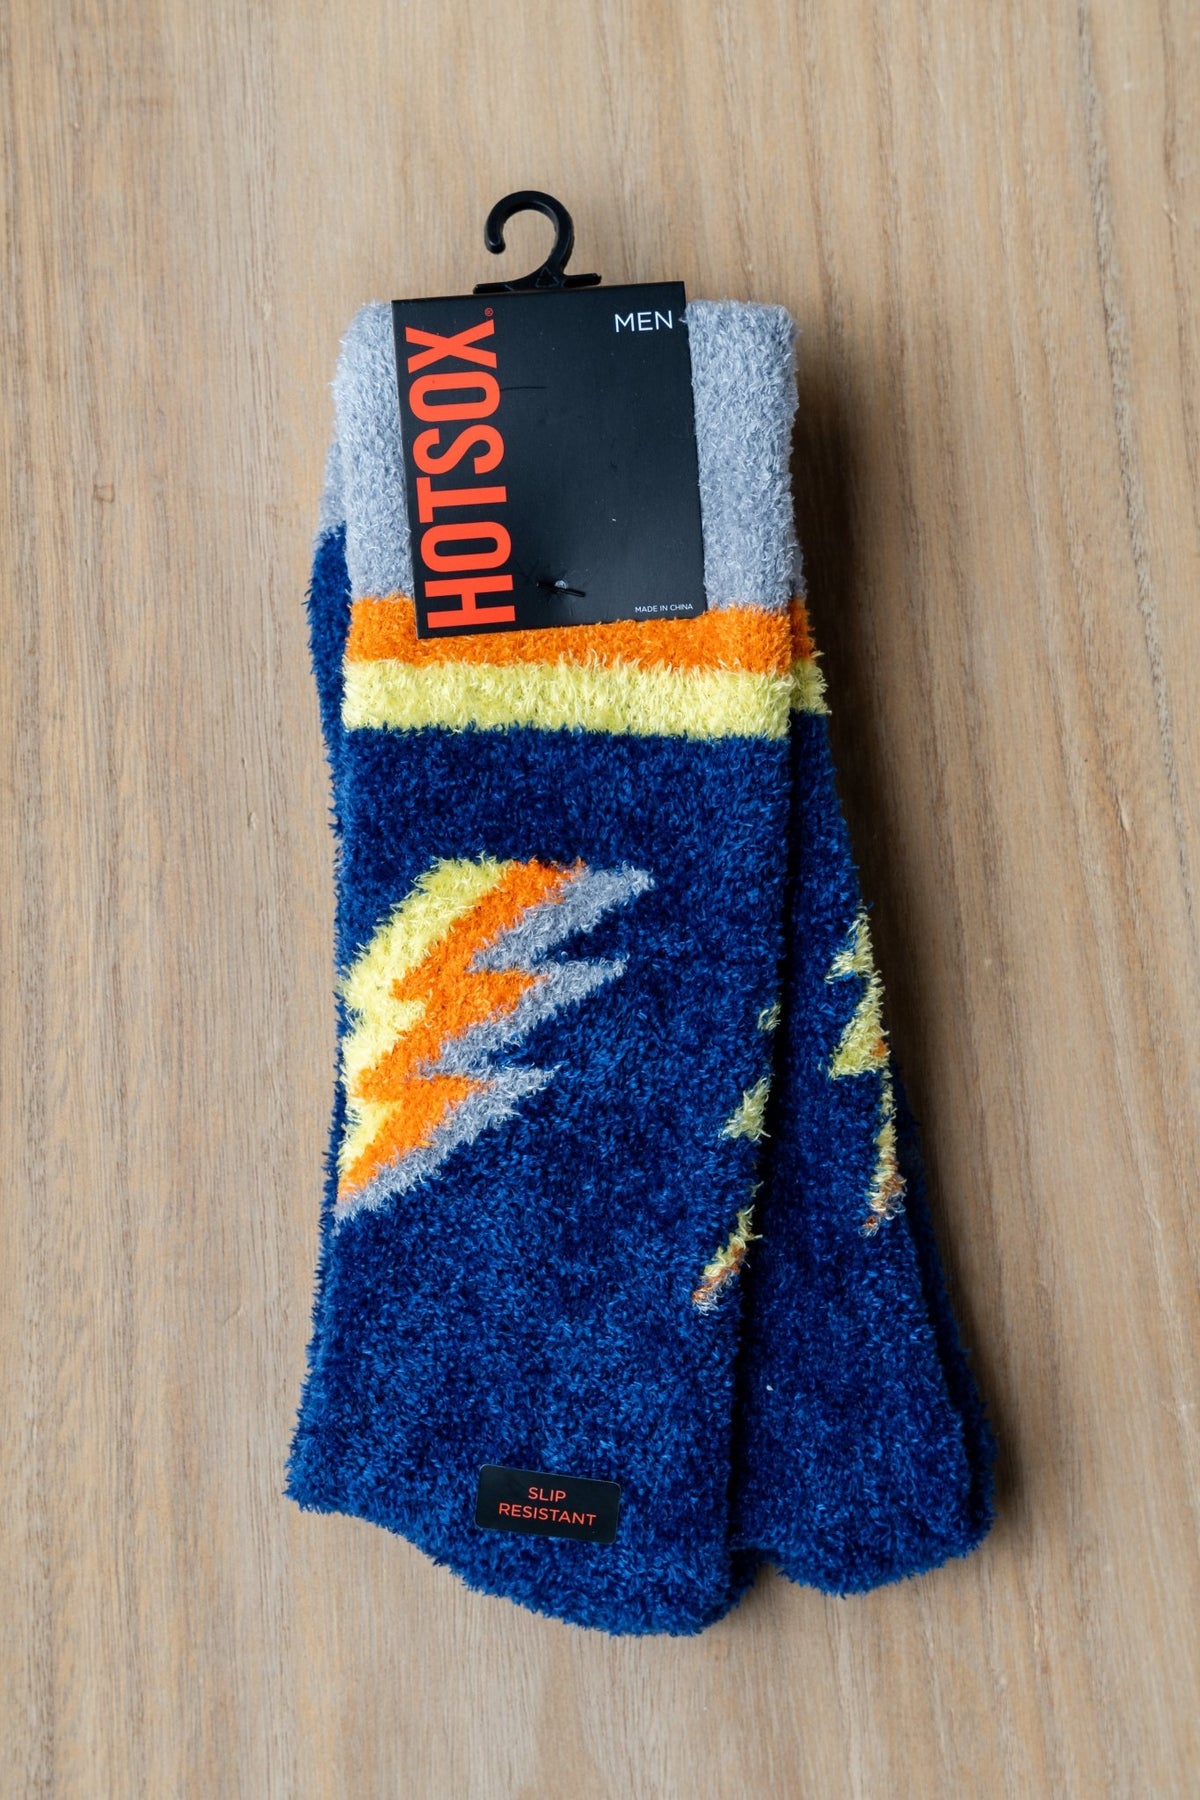 HotSox fuzzy bolt socks navy - Trendy Socks at Lush Fashion Lounge Boutique in Oklahoma City